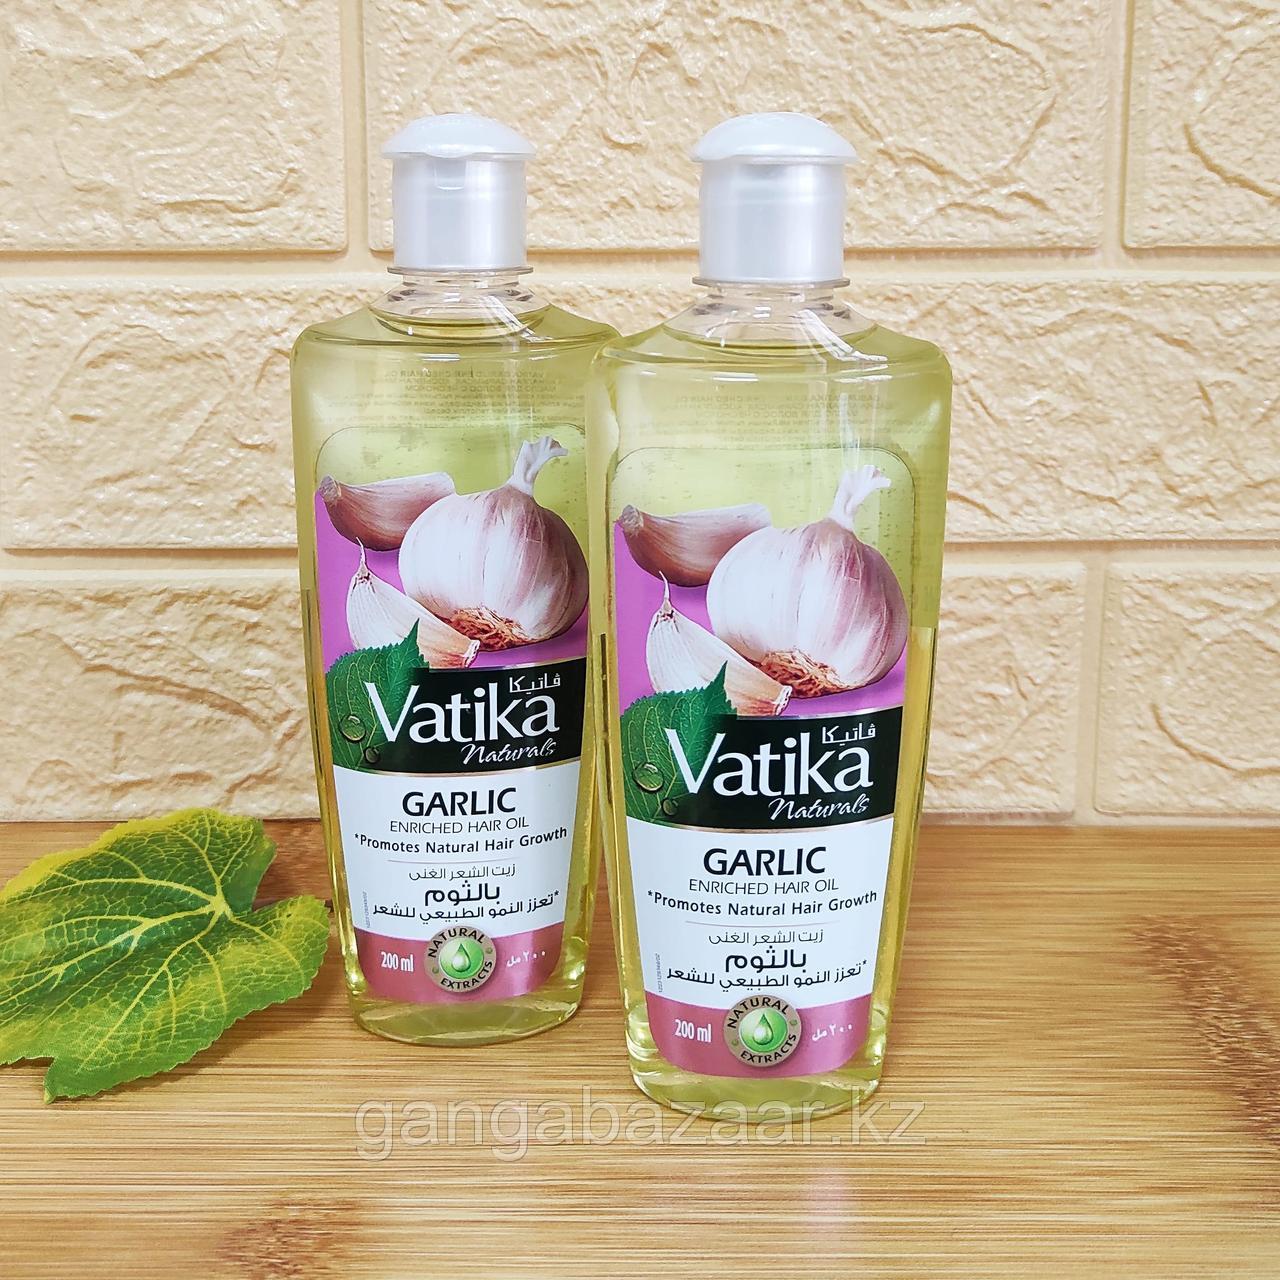 Масло чесночное для волос (Garlic Hair Oil Vatika) -уникальная формула для роста волос 200 мл